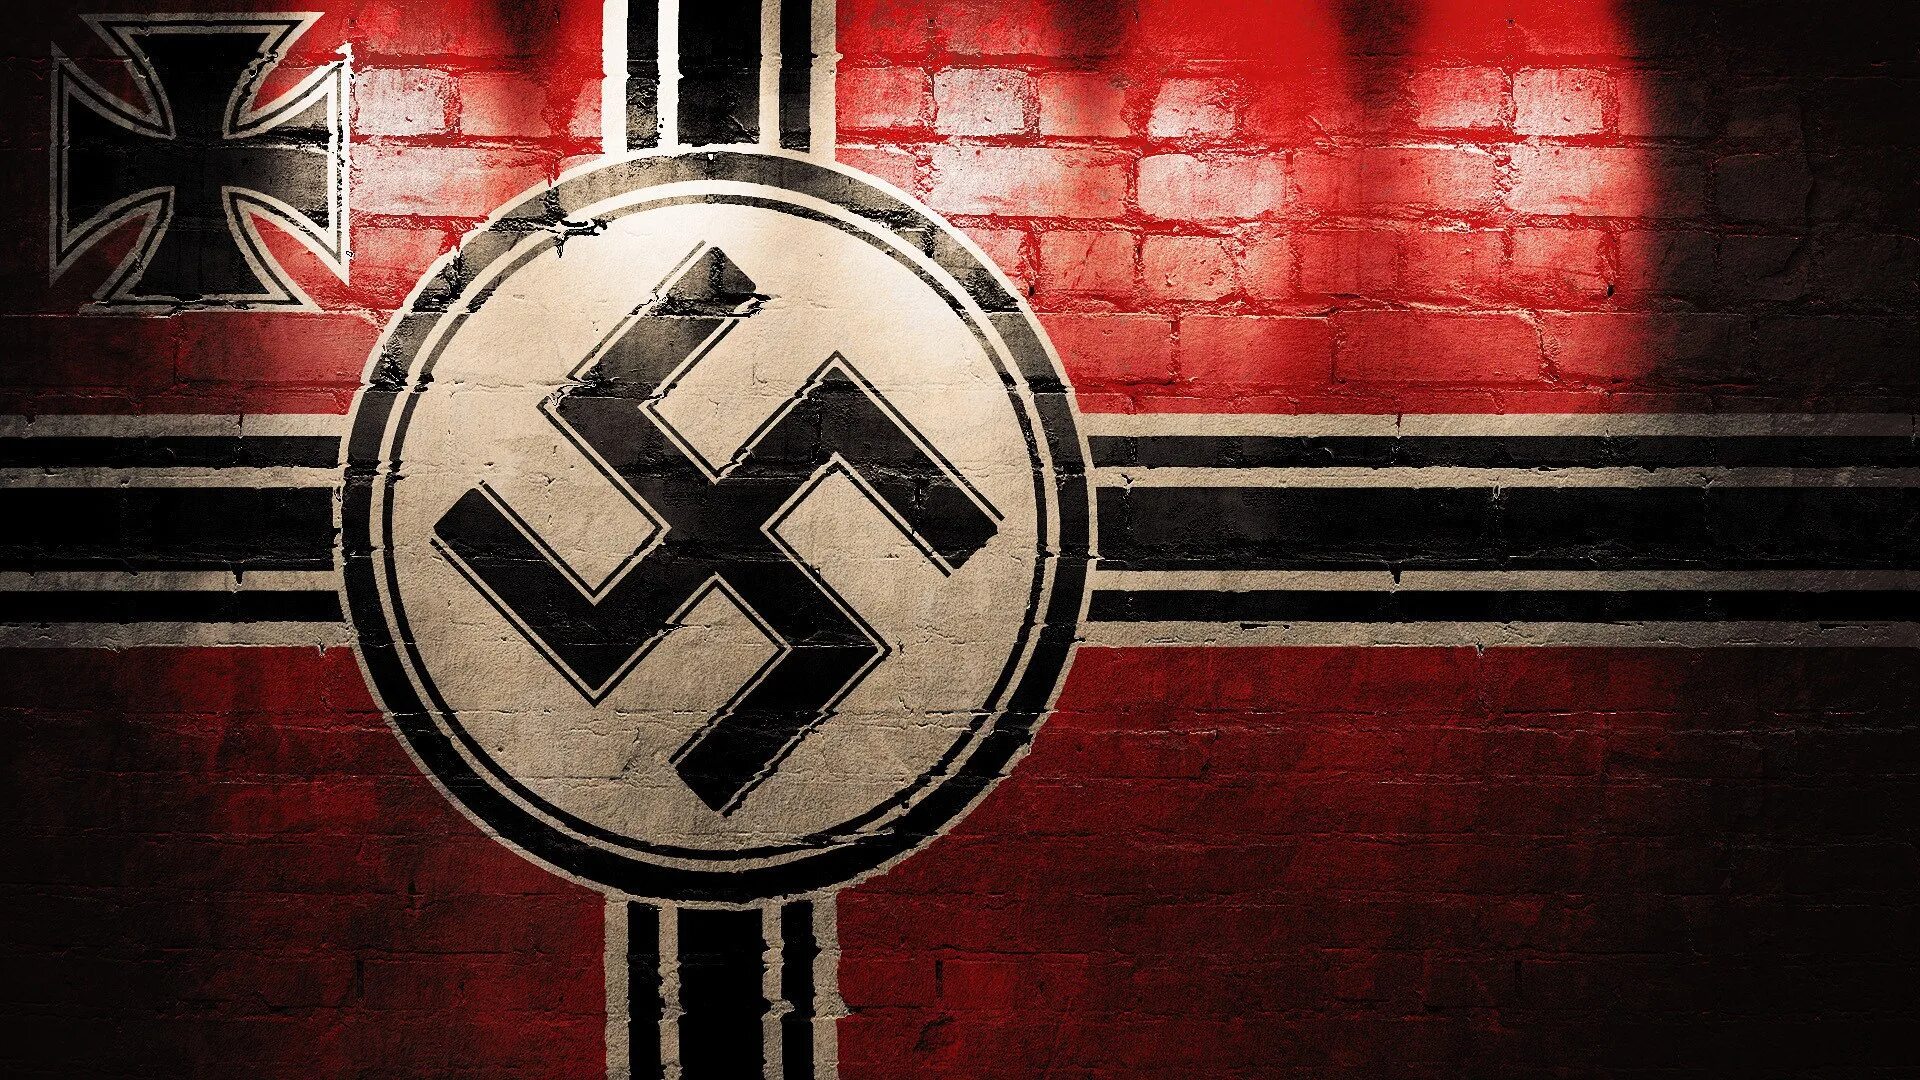 Фон сс. Флаг третьего рейха СС. Нацистская символика третьего рейха.